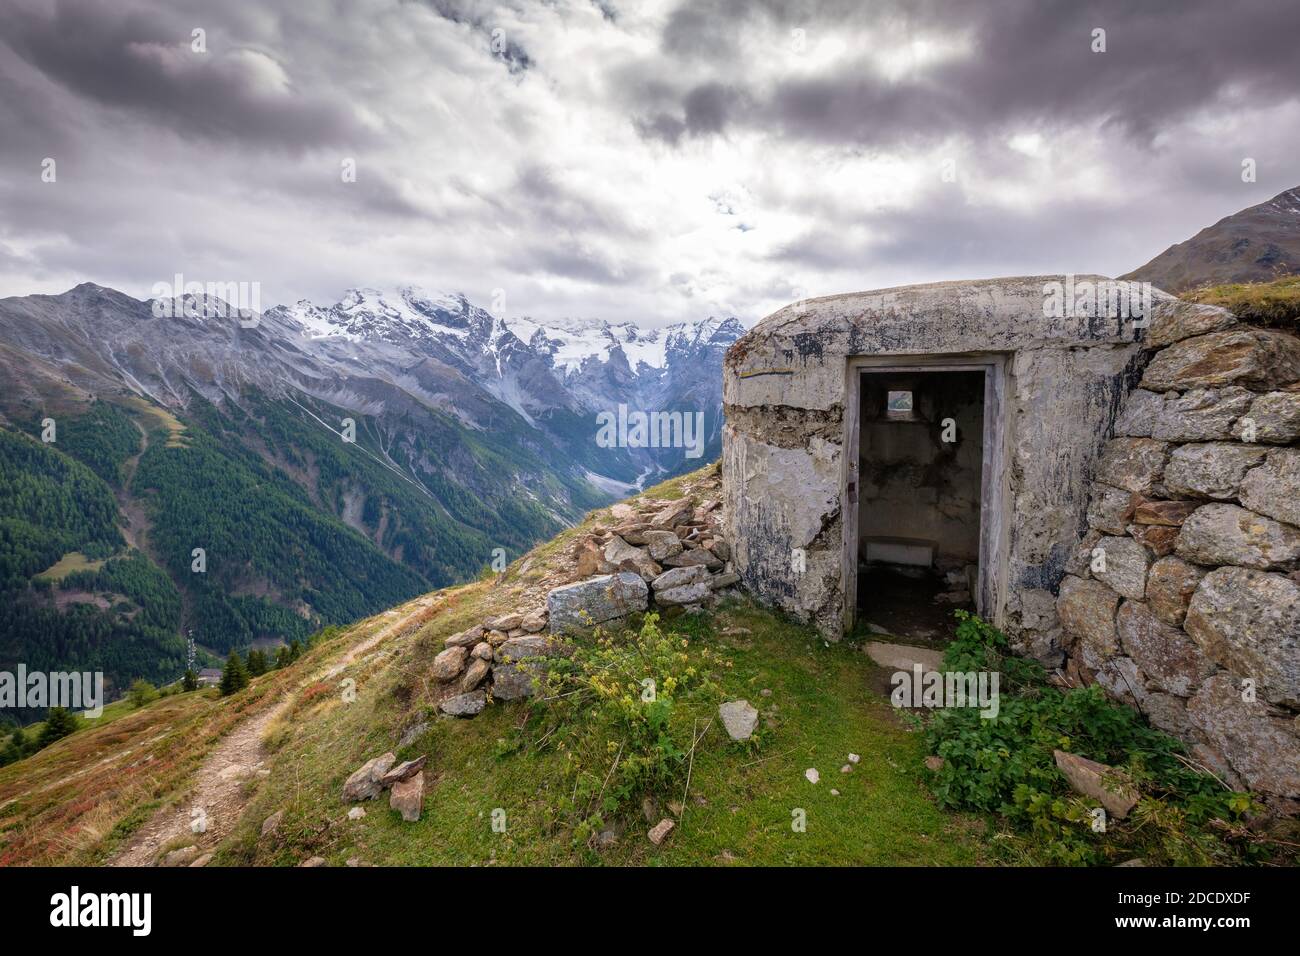 Dans la vallée de Val venosta (allemand: Vinschgau) dans la région Alto Adige (allemand: Südtirol) il y a des bunkers à trouver datant de la Seconde Guerre mondiale Banque D'Images